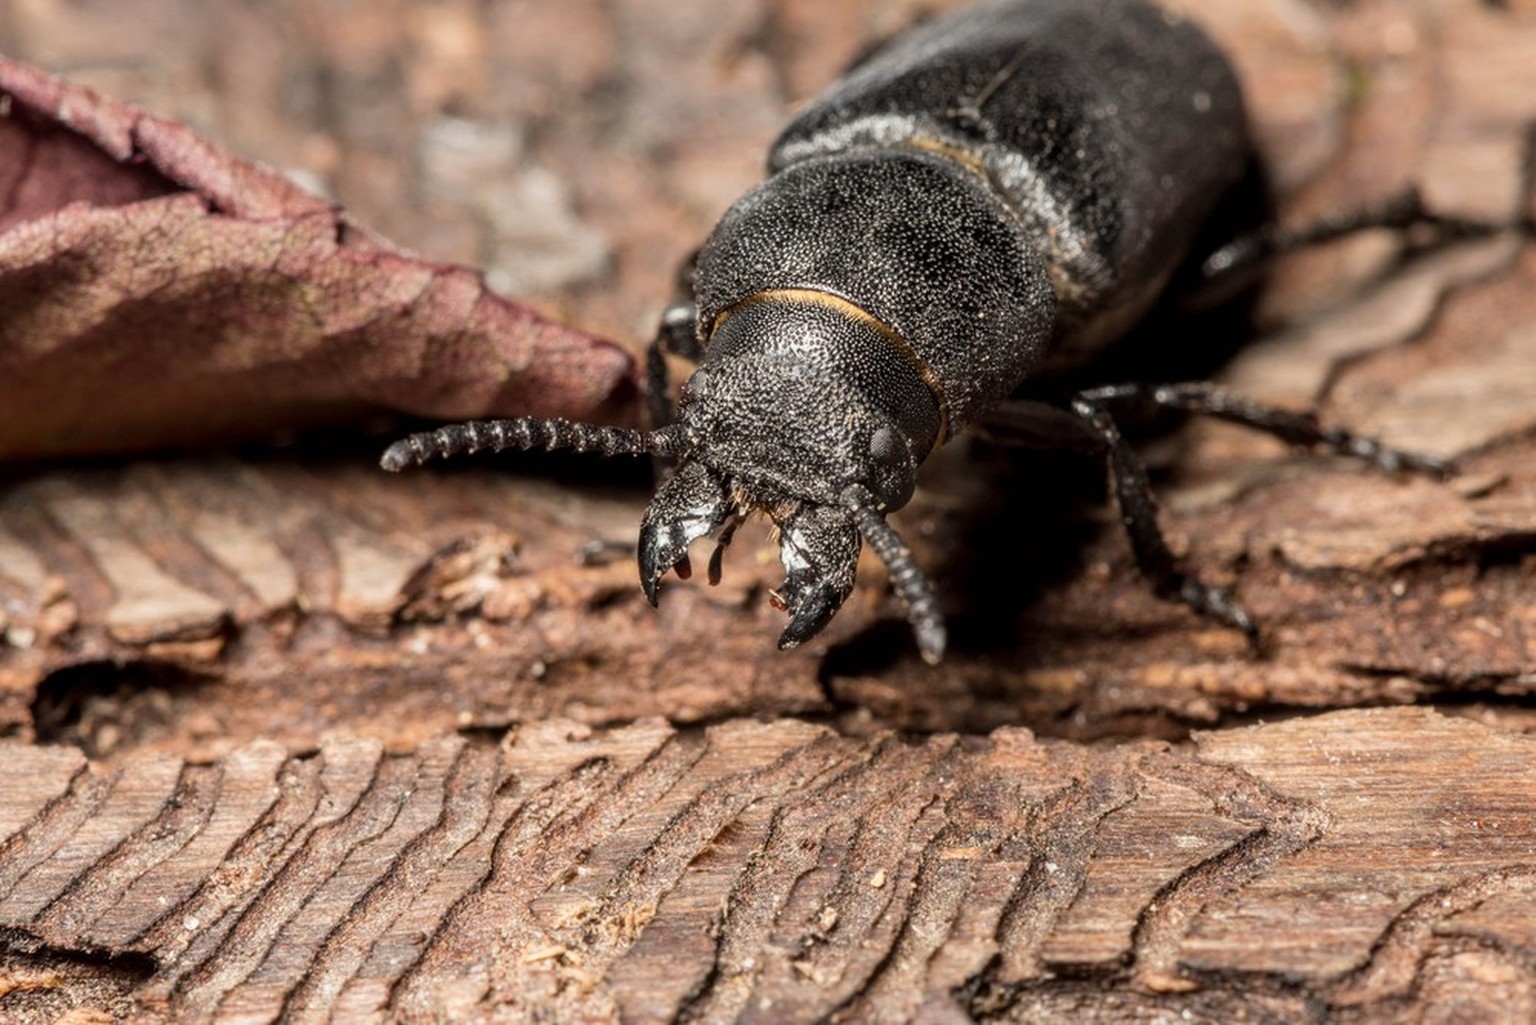 bark beetle eats tree
Borkenkäfer